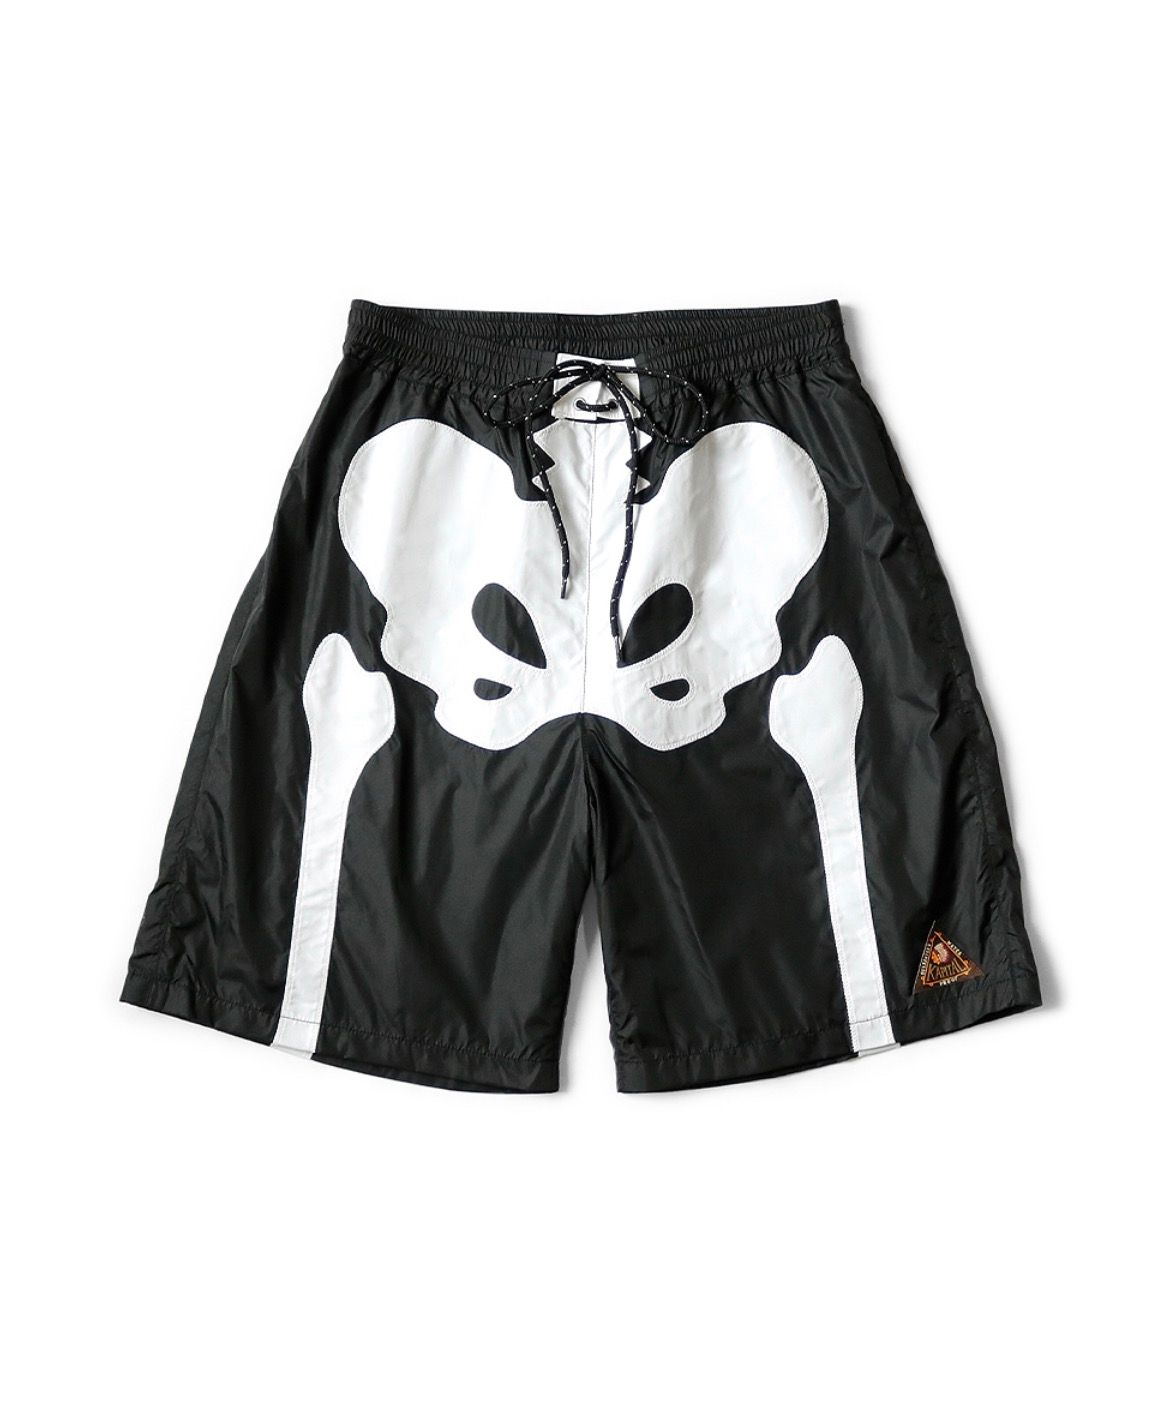 Pre-owned Kapital Bone Swim Shorts Size 2 In Black